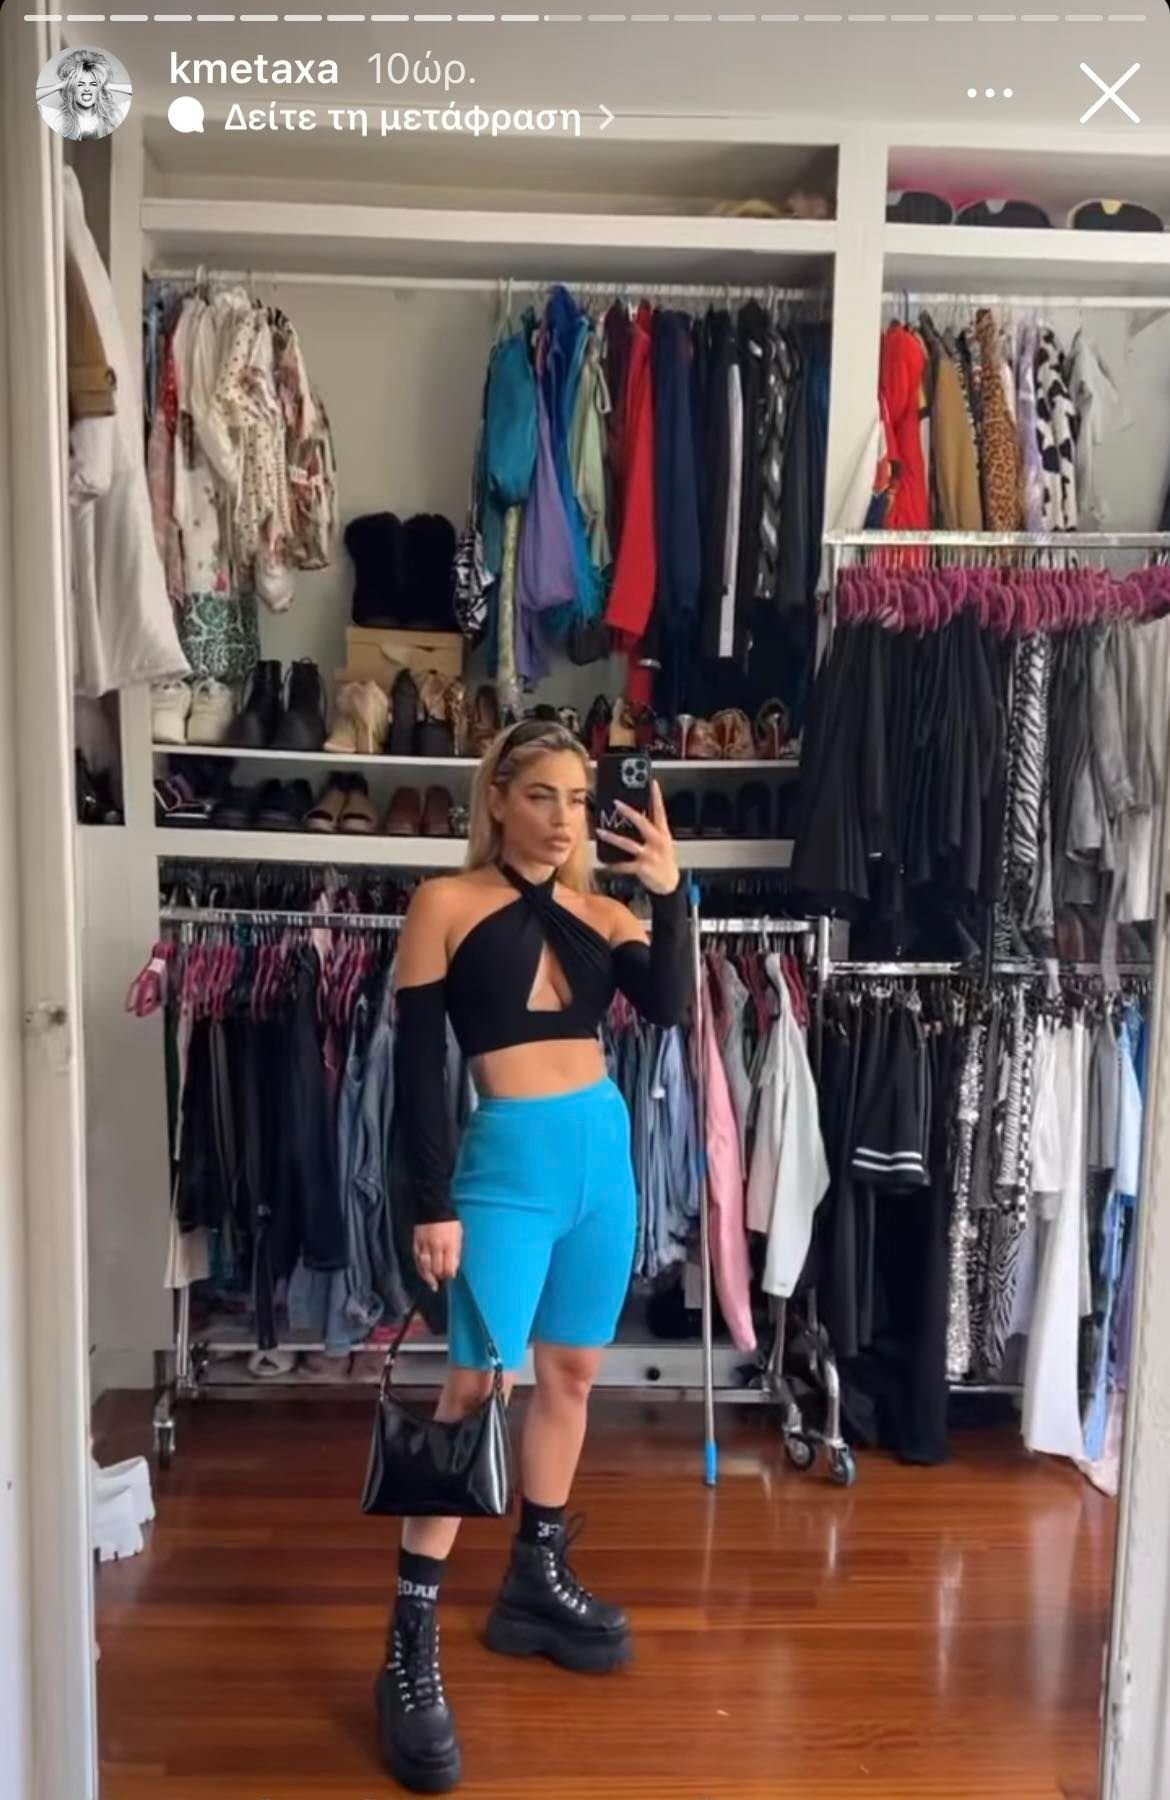 Κόνι Μεταξά: Μας δείχνει την τεράστια ντουλάπα της- Έχει τακτοποιήσει τα ρούχα ανά χρώματα